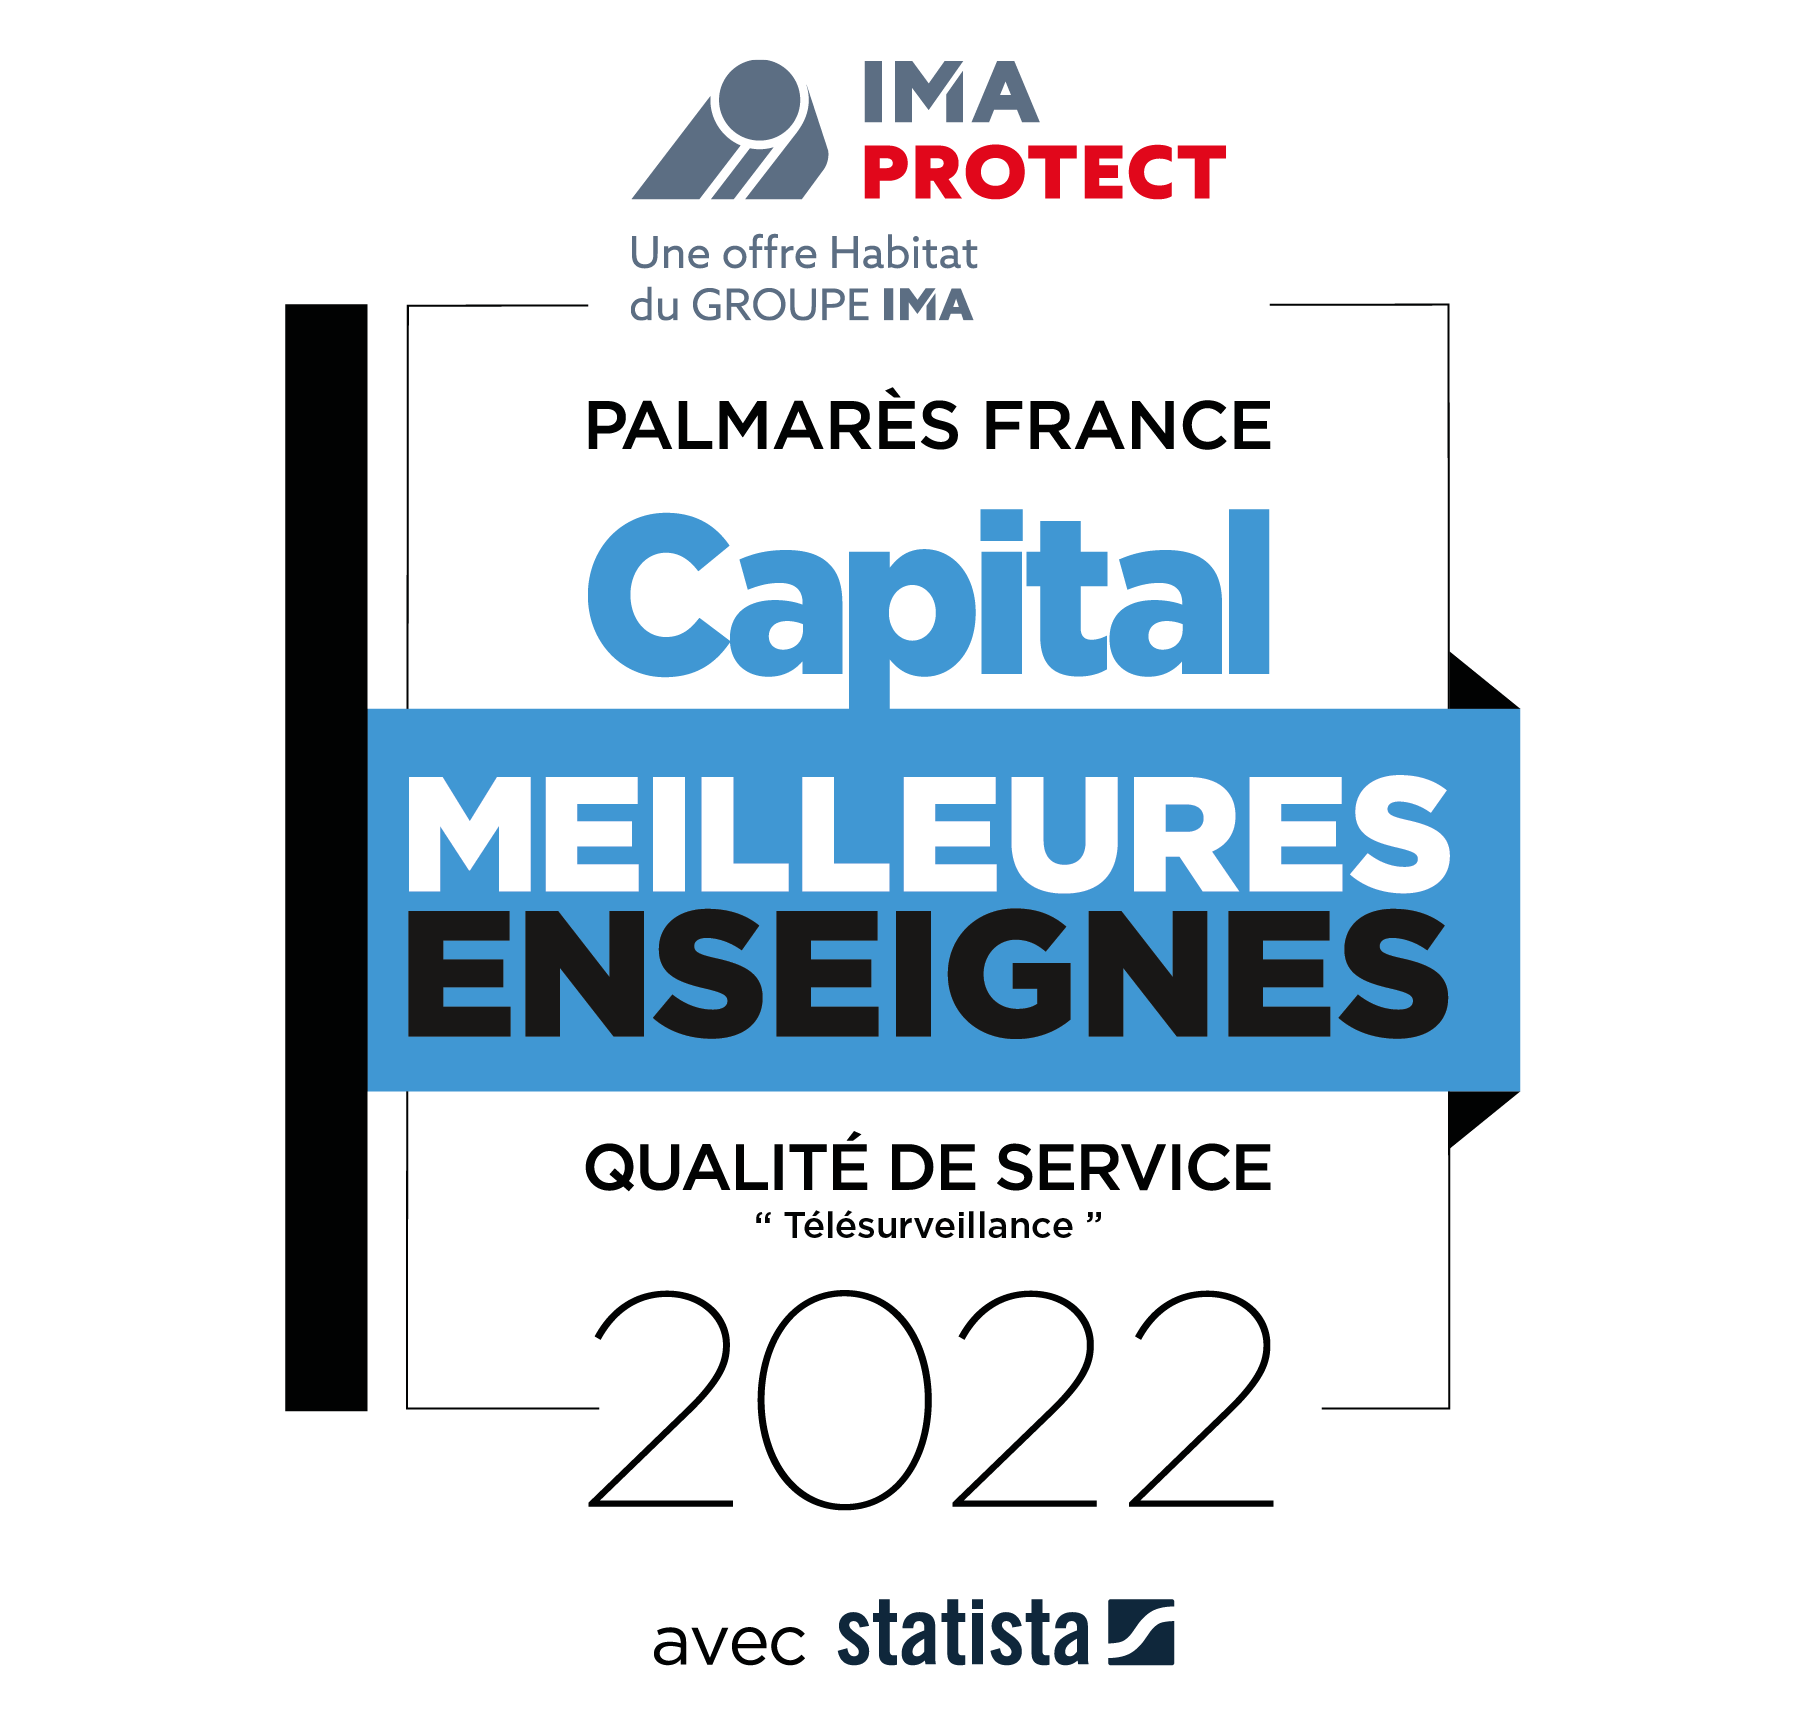 Palmarès France Capital Meilleures enseignes 2022 - Qualité de service : télésurveillance